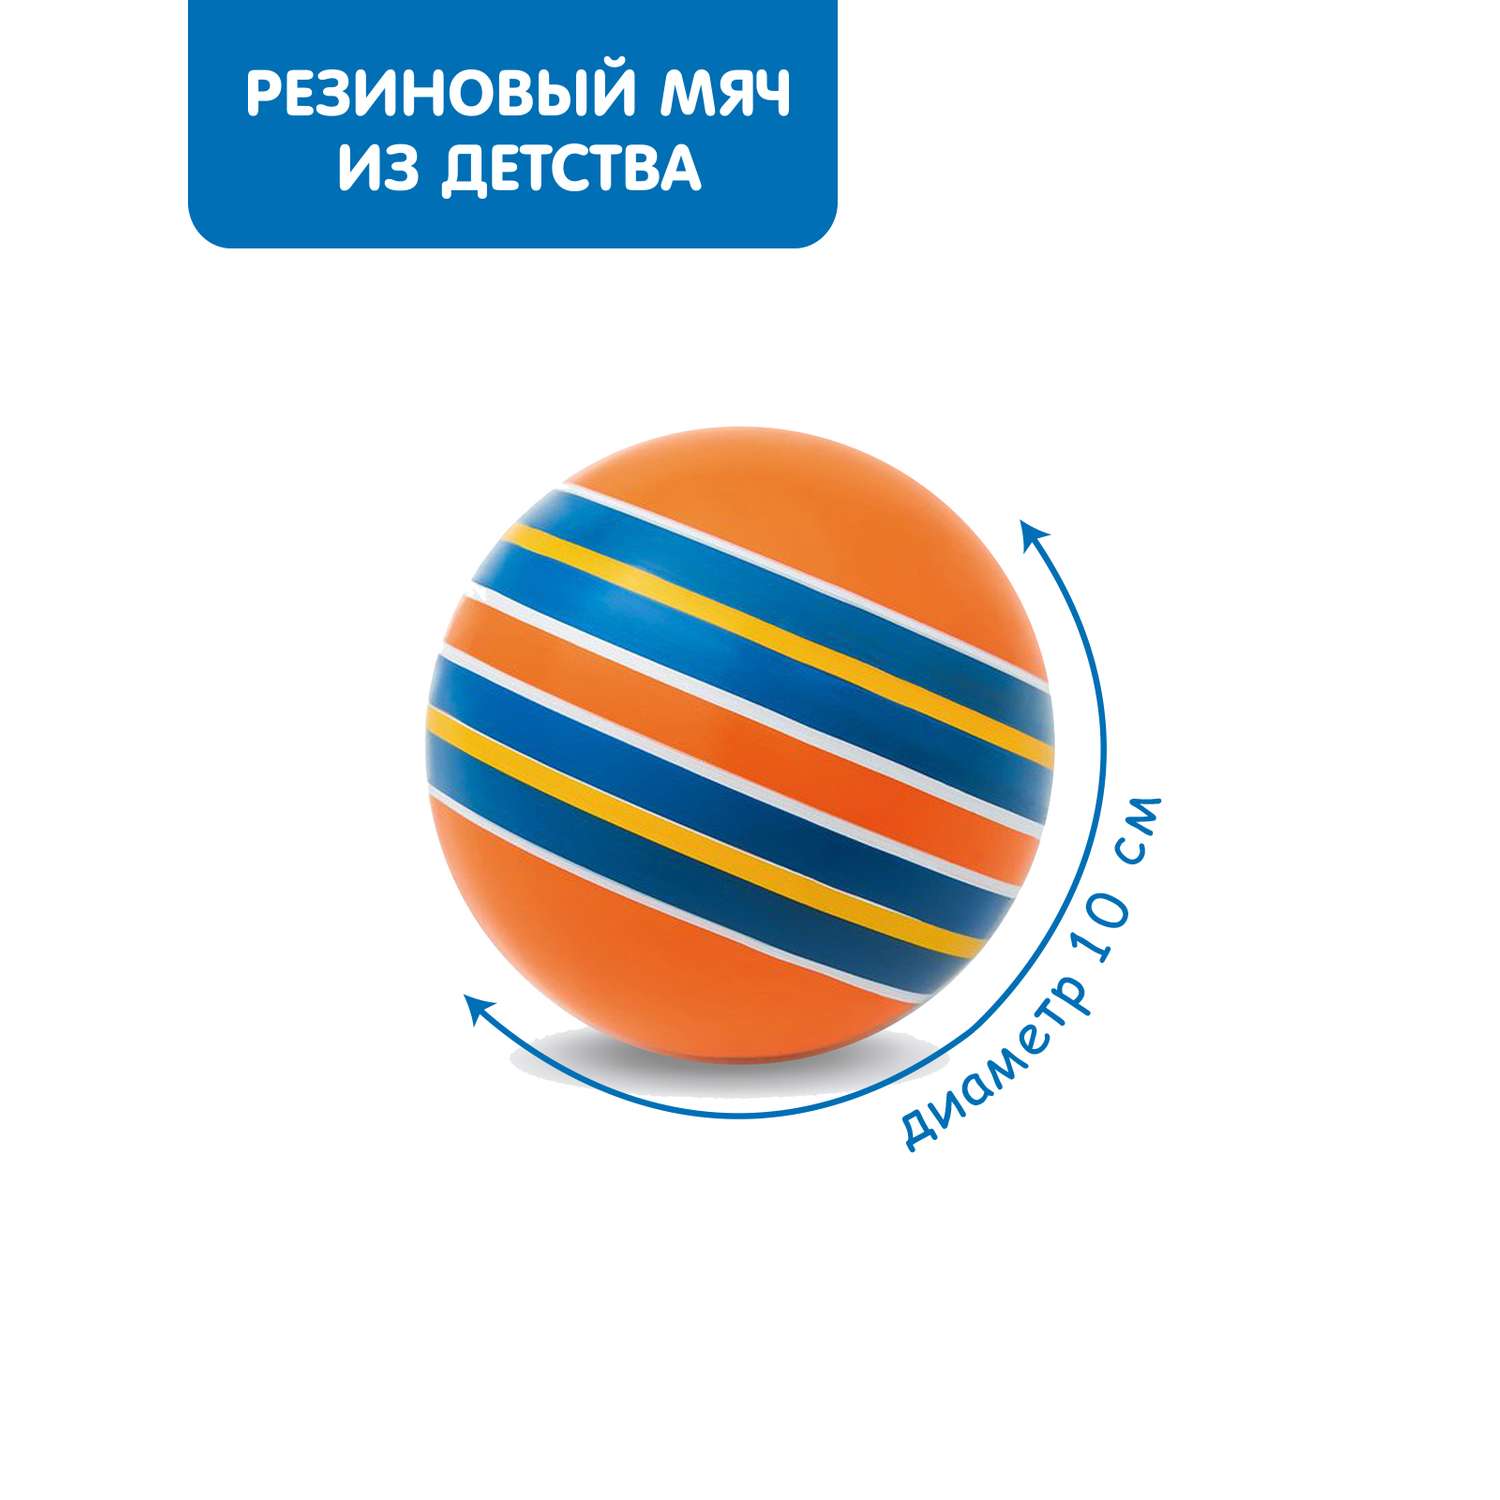 Мяч ЧАПАЕВ диаметр 100 мм Тропинки оранжевый фон синяя полоска - фото 1